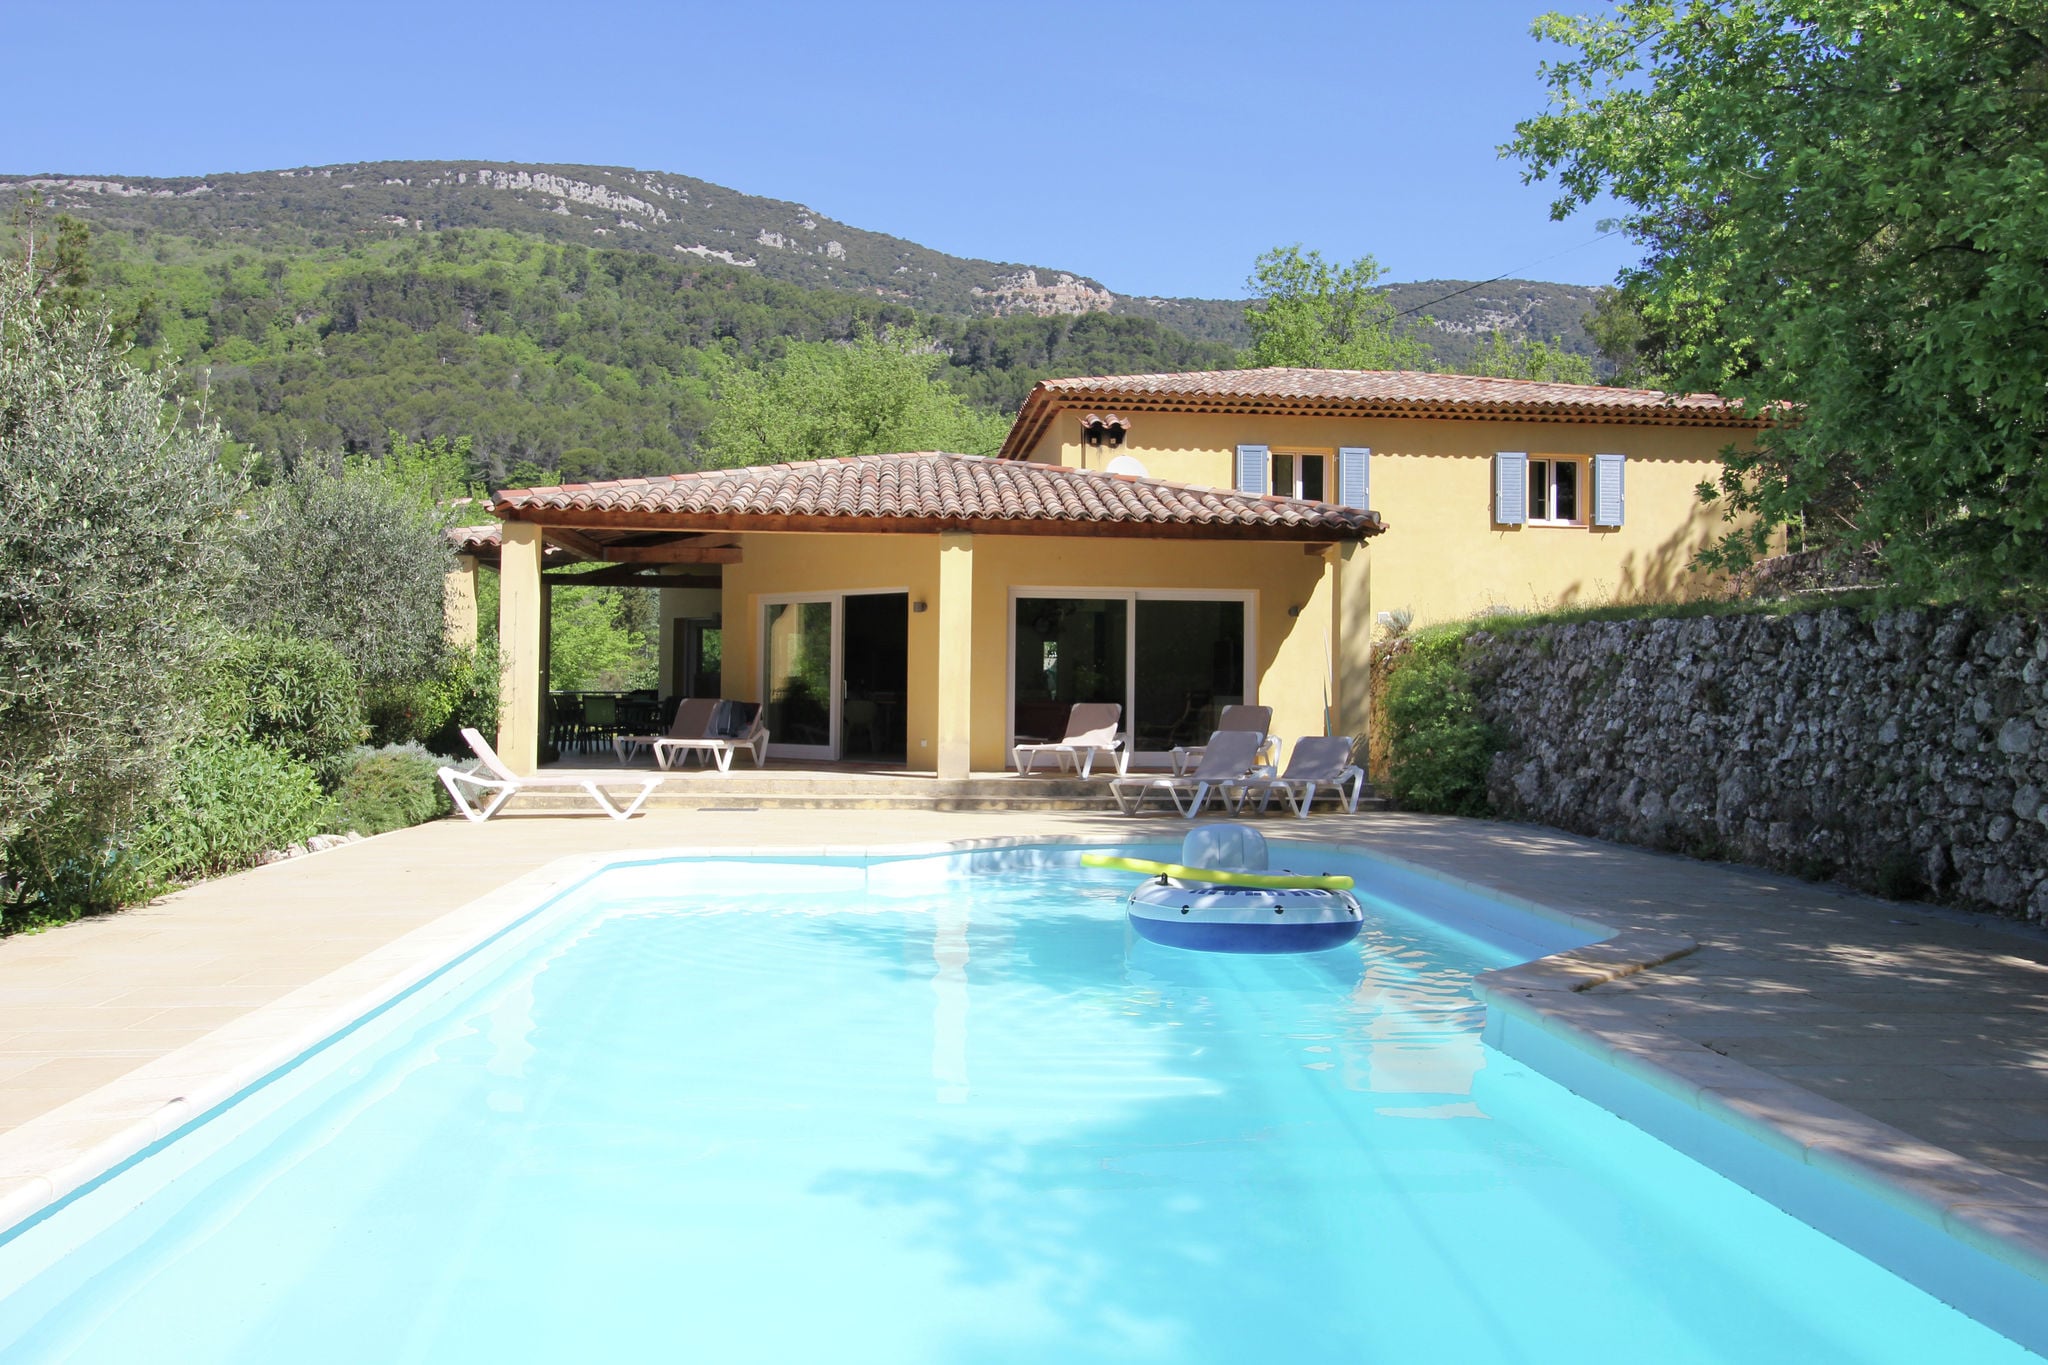 Villa d'élite avec piscine à Bargemon, Provence